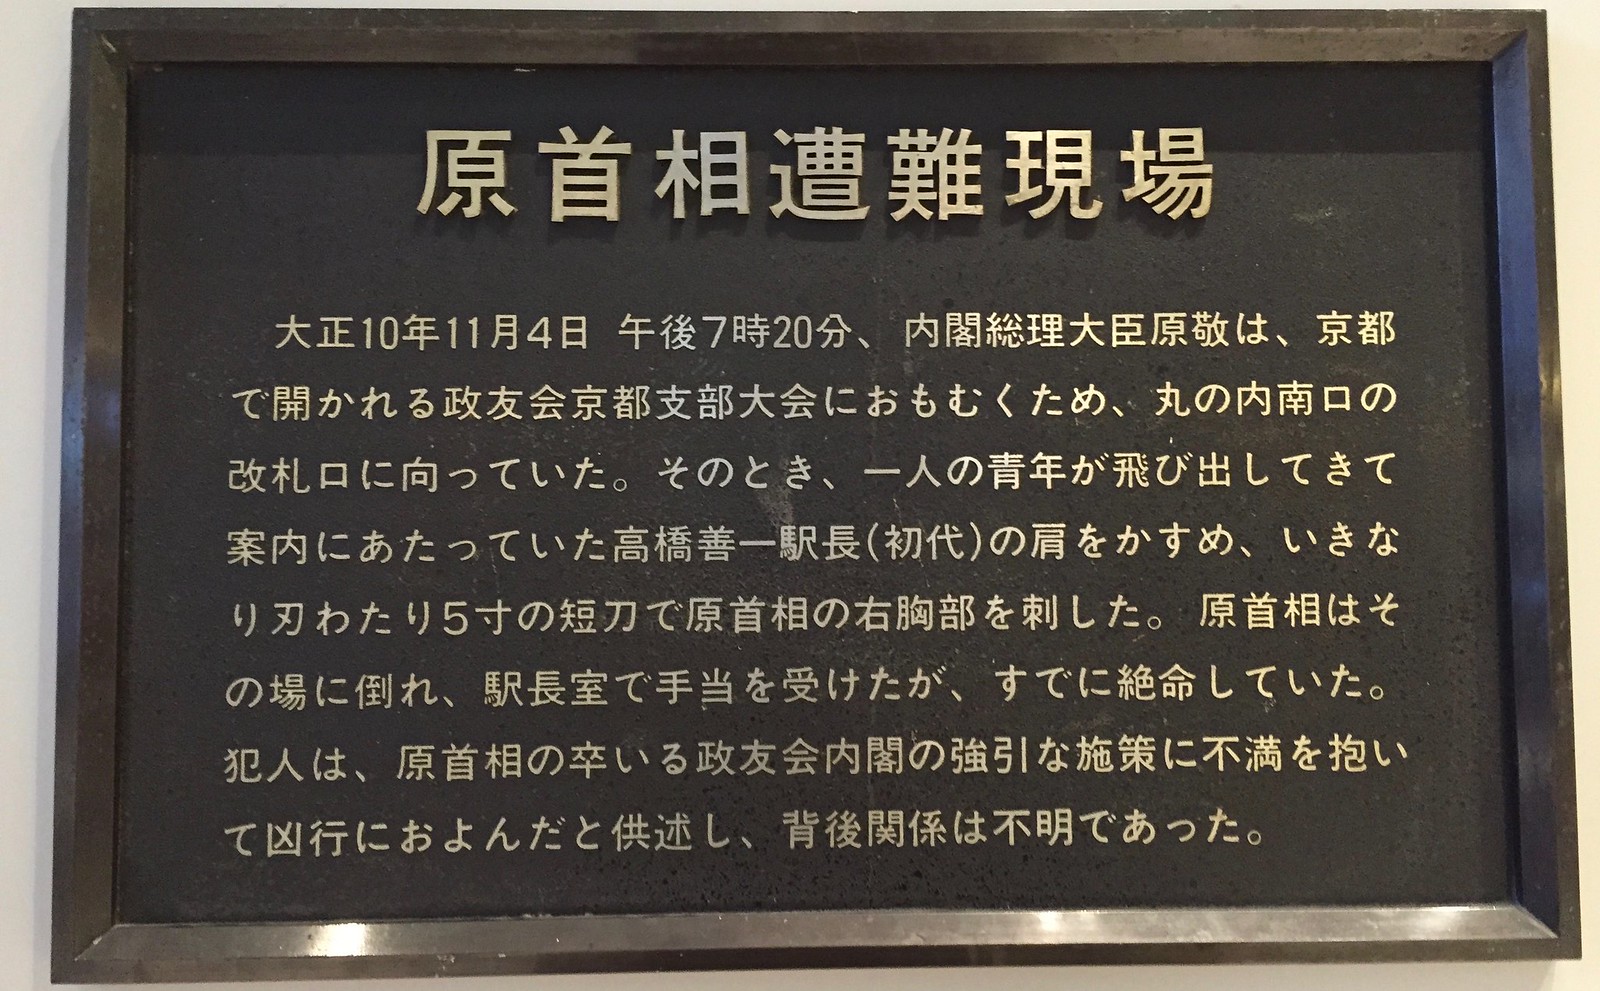 Assassination spot at Tokyo Station